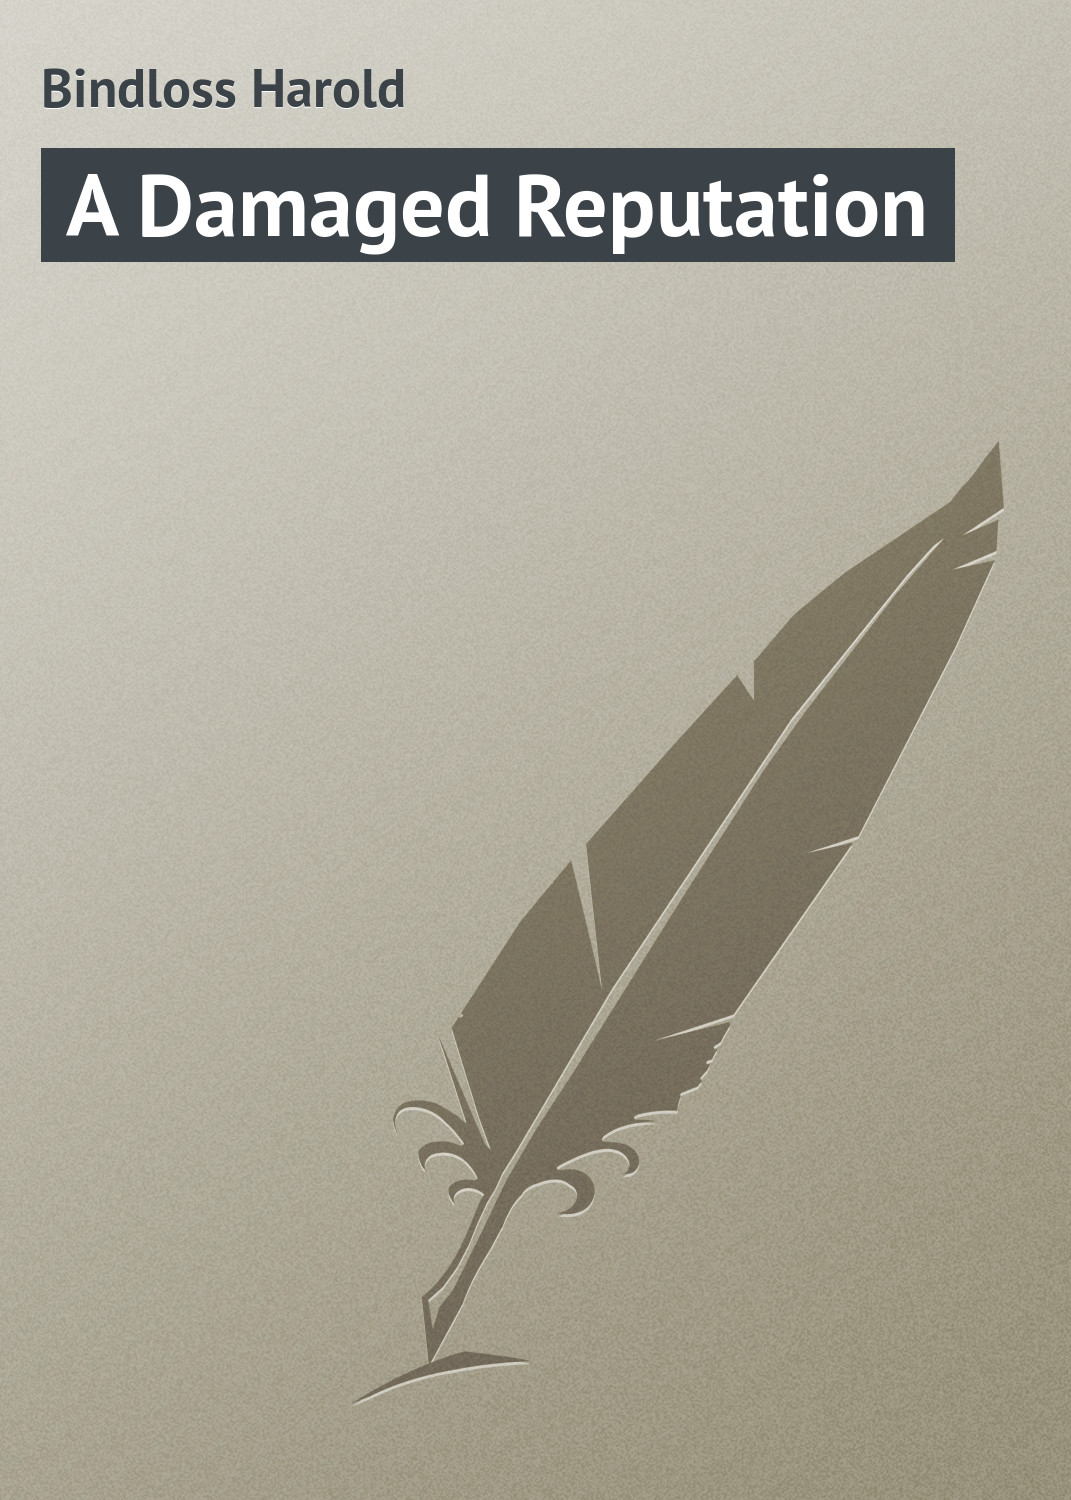 Книга A Damaged Reputation из серии , созданная Harold Bindloss, может относится к жанру Зарубежная классика, Зарубежные любовные романы. Стоимость электронной книги A Damaged Reputation с идентификатором 23164179 составляет 5.99 руб.